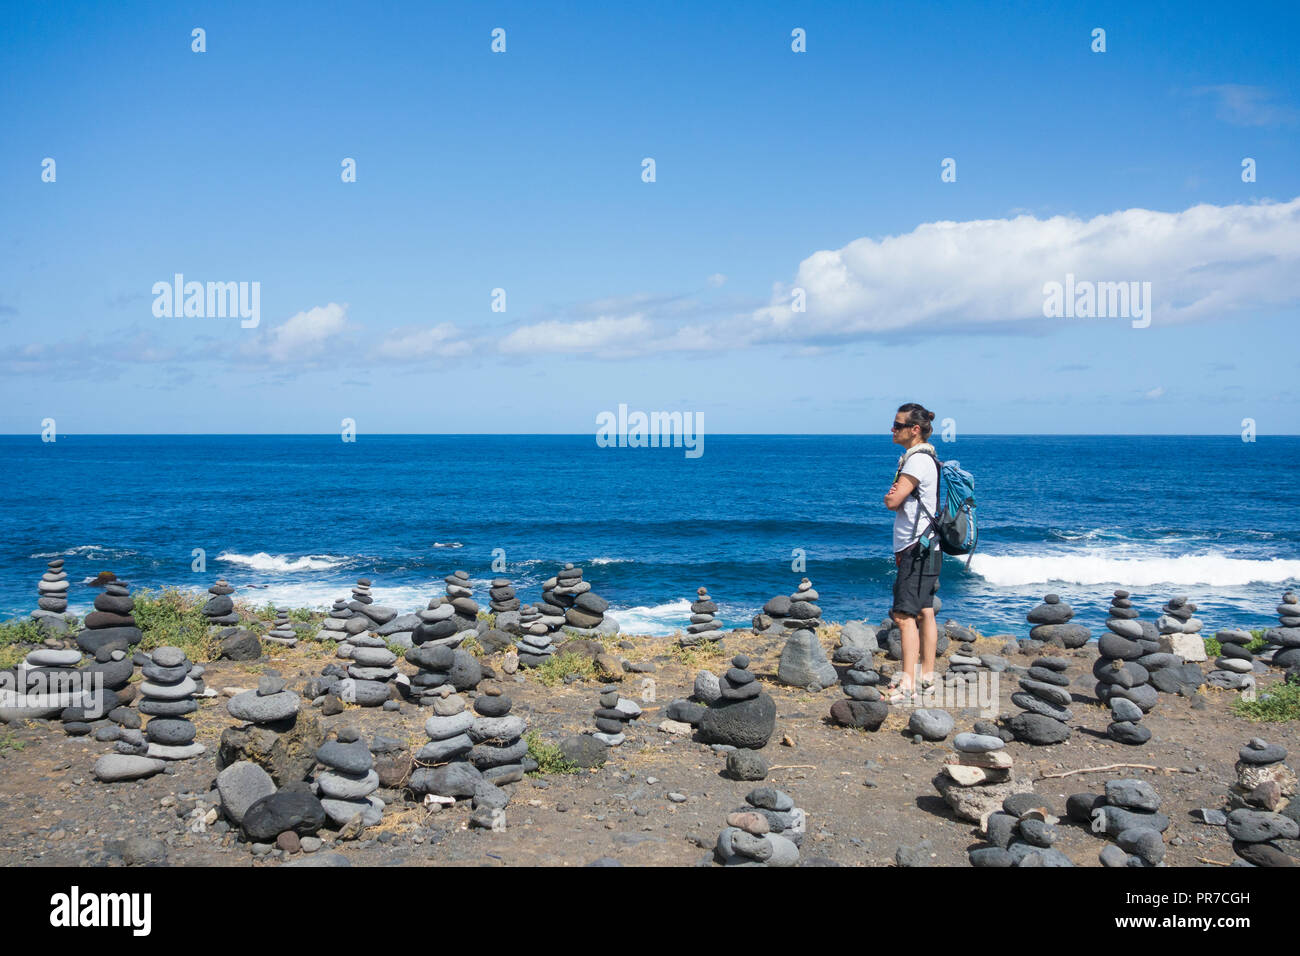 Balanced stones/empilage en pierre sur plage rocheuse. Banque D'Images